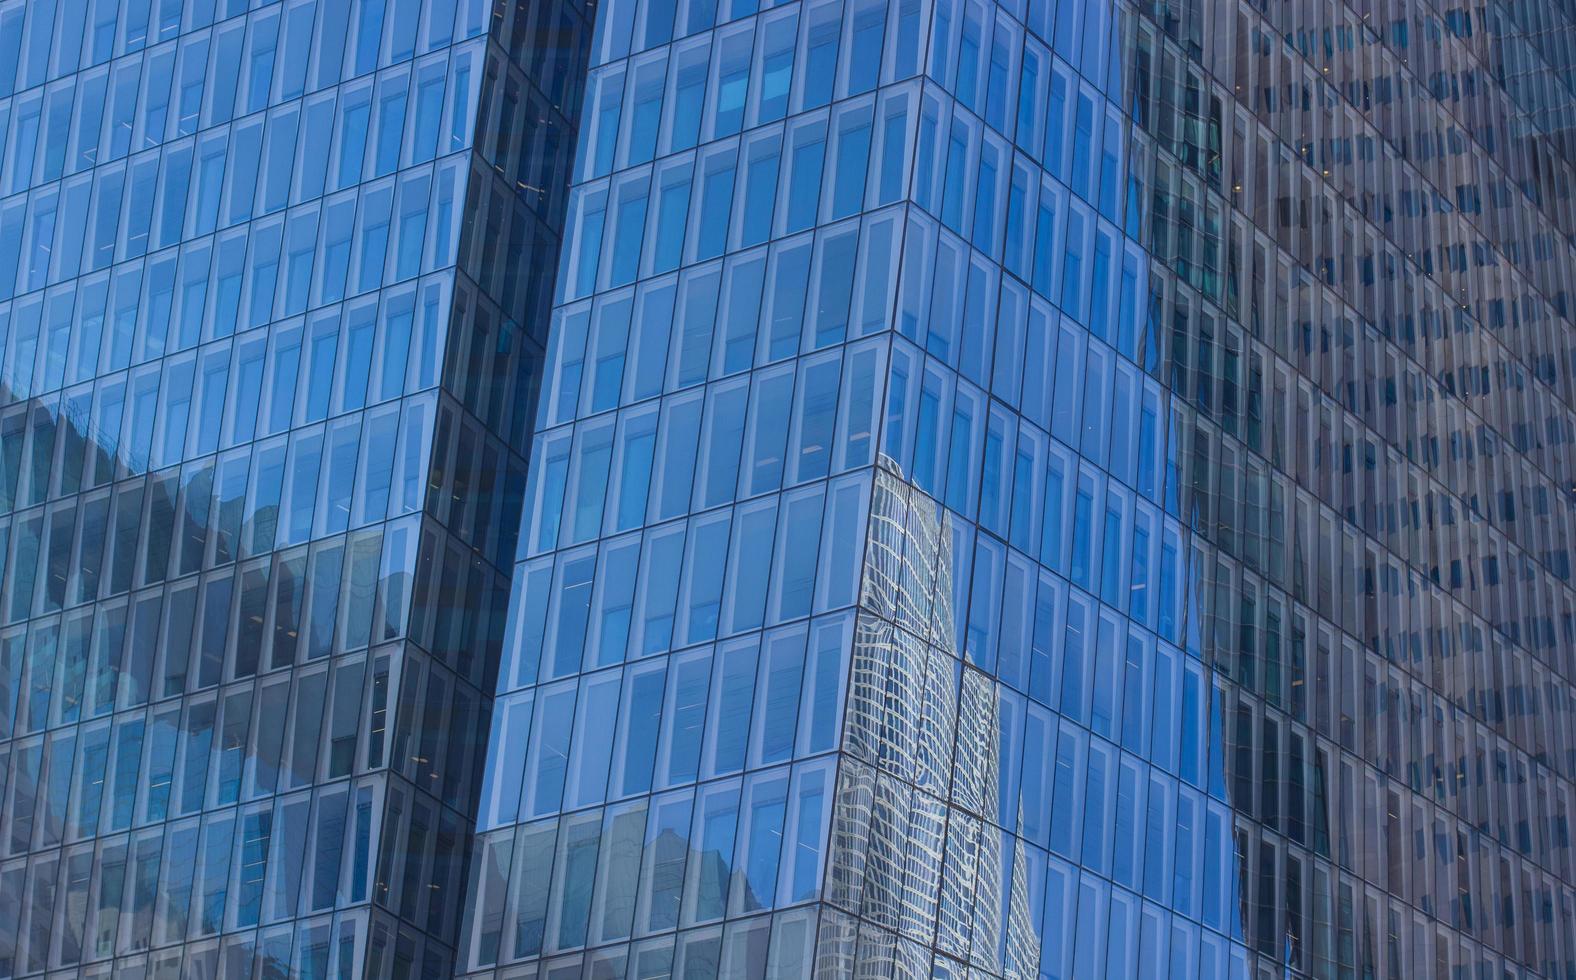 Photographie à faible angle d'un bâtiment aux parois de verre bleu photo